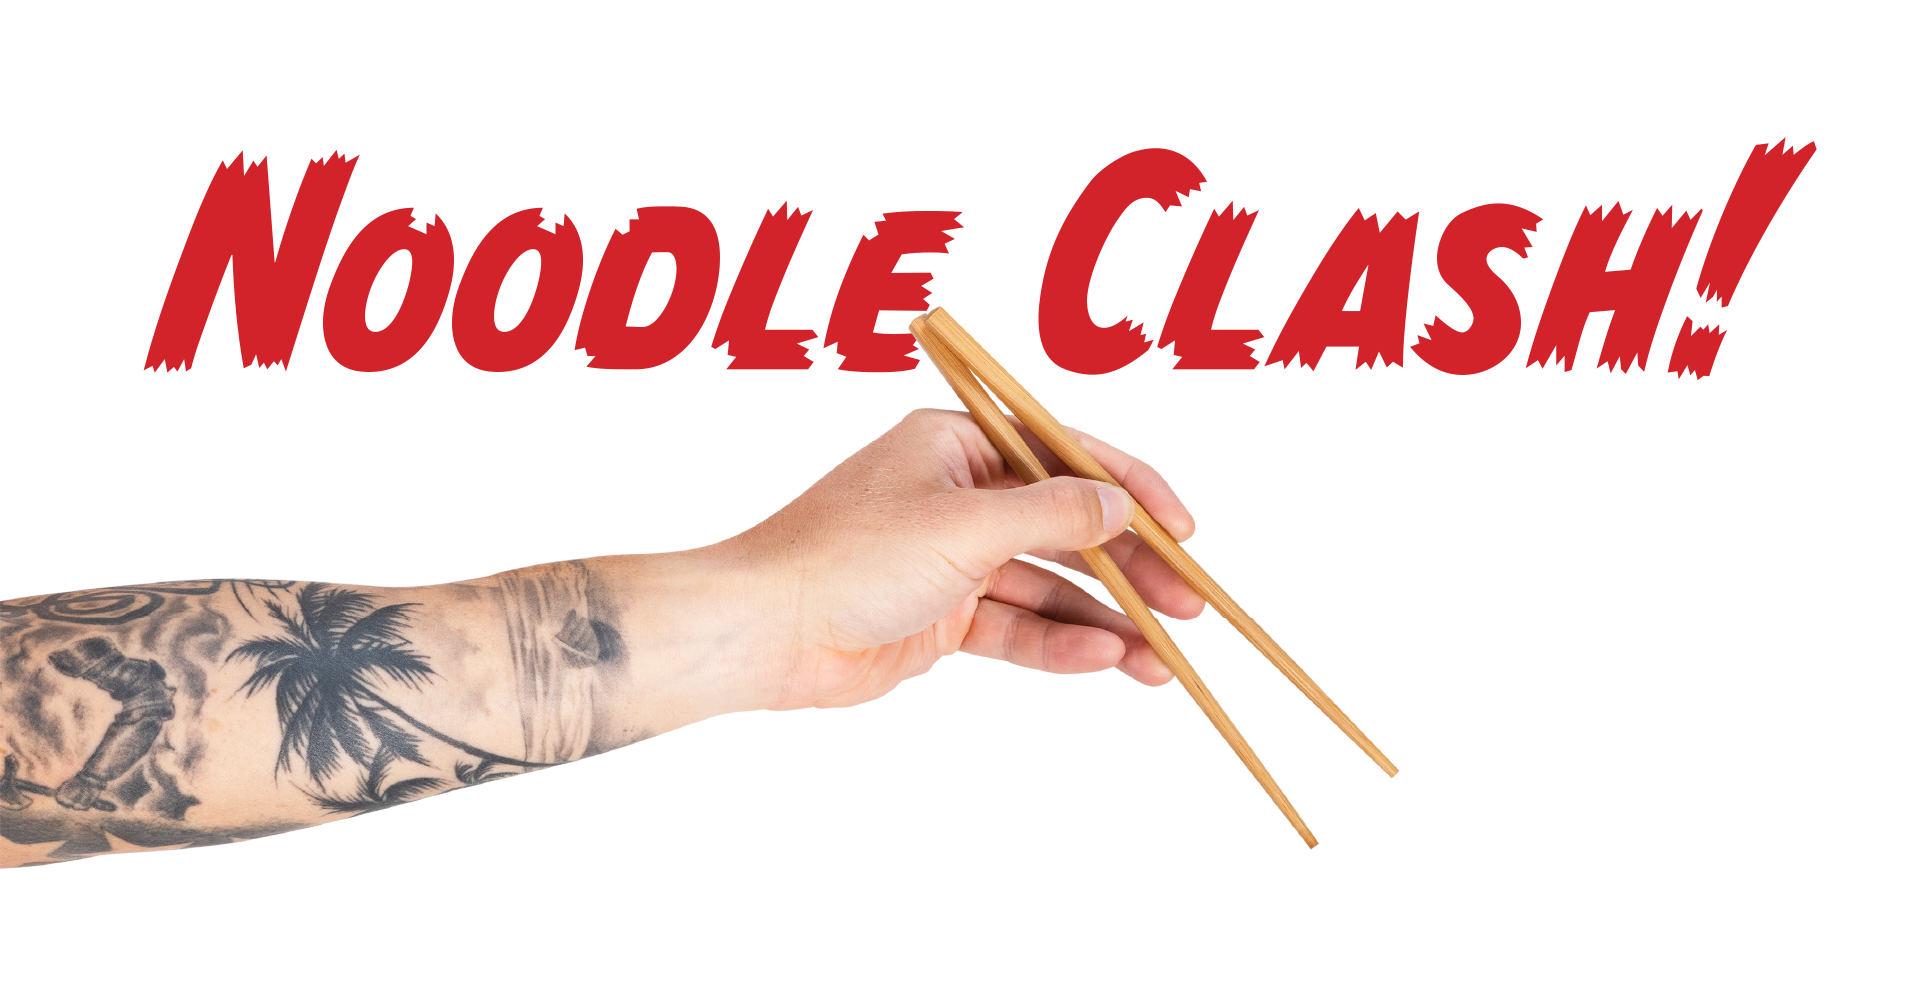 Noodle Clash!